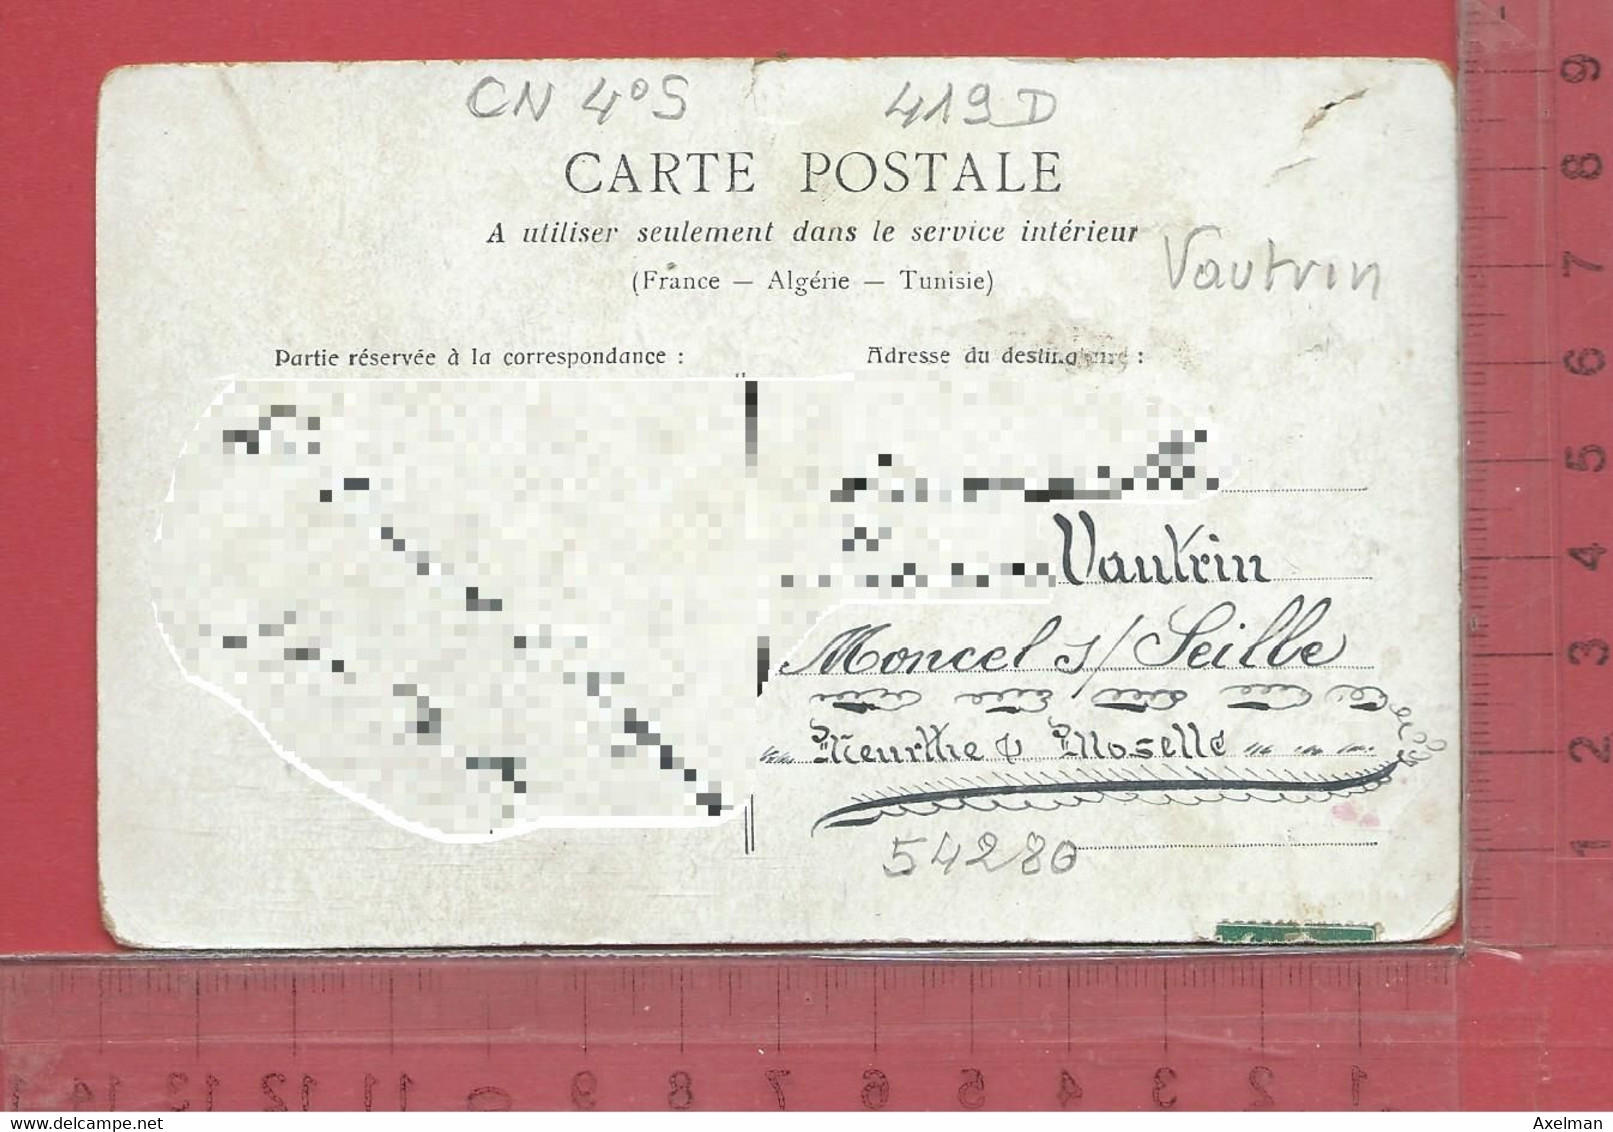 CARTE NOMINATIVE : VAUTRIN  à  54280  Moncel-sur-Seille - Genealogy